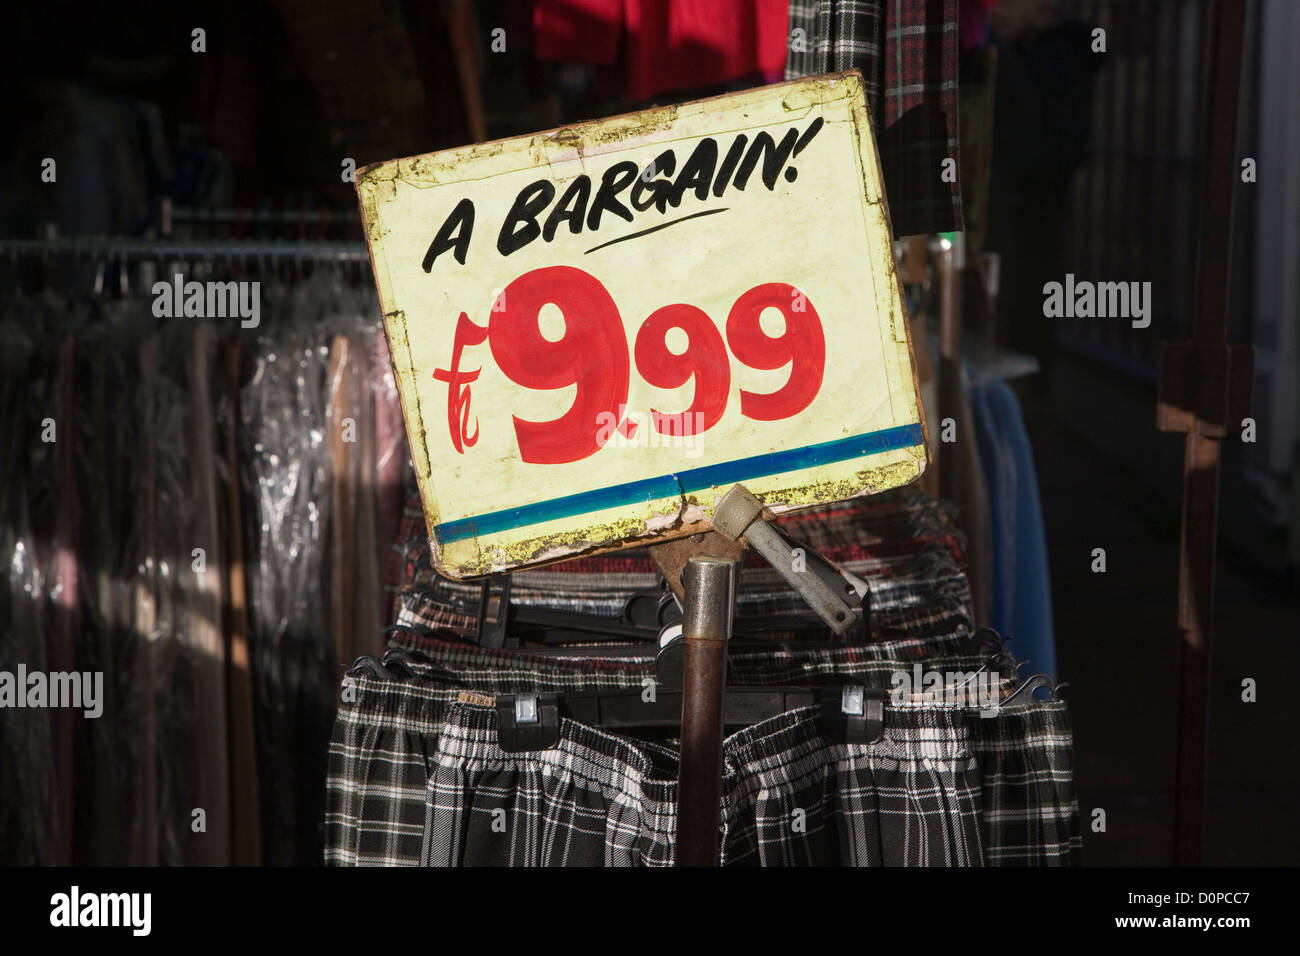 Inscrivez-vous pour un prix de £9,99 vêtements négocier échoppe de marché porte manteau, England, UK Banque D'Images